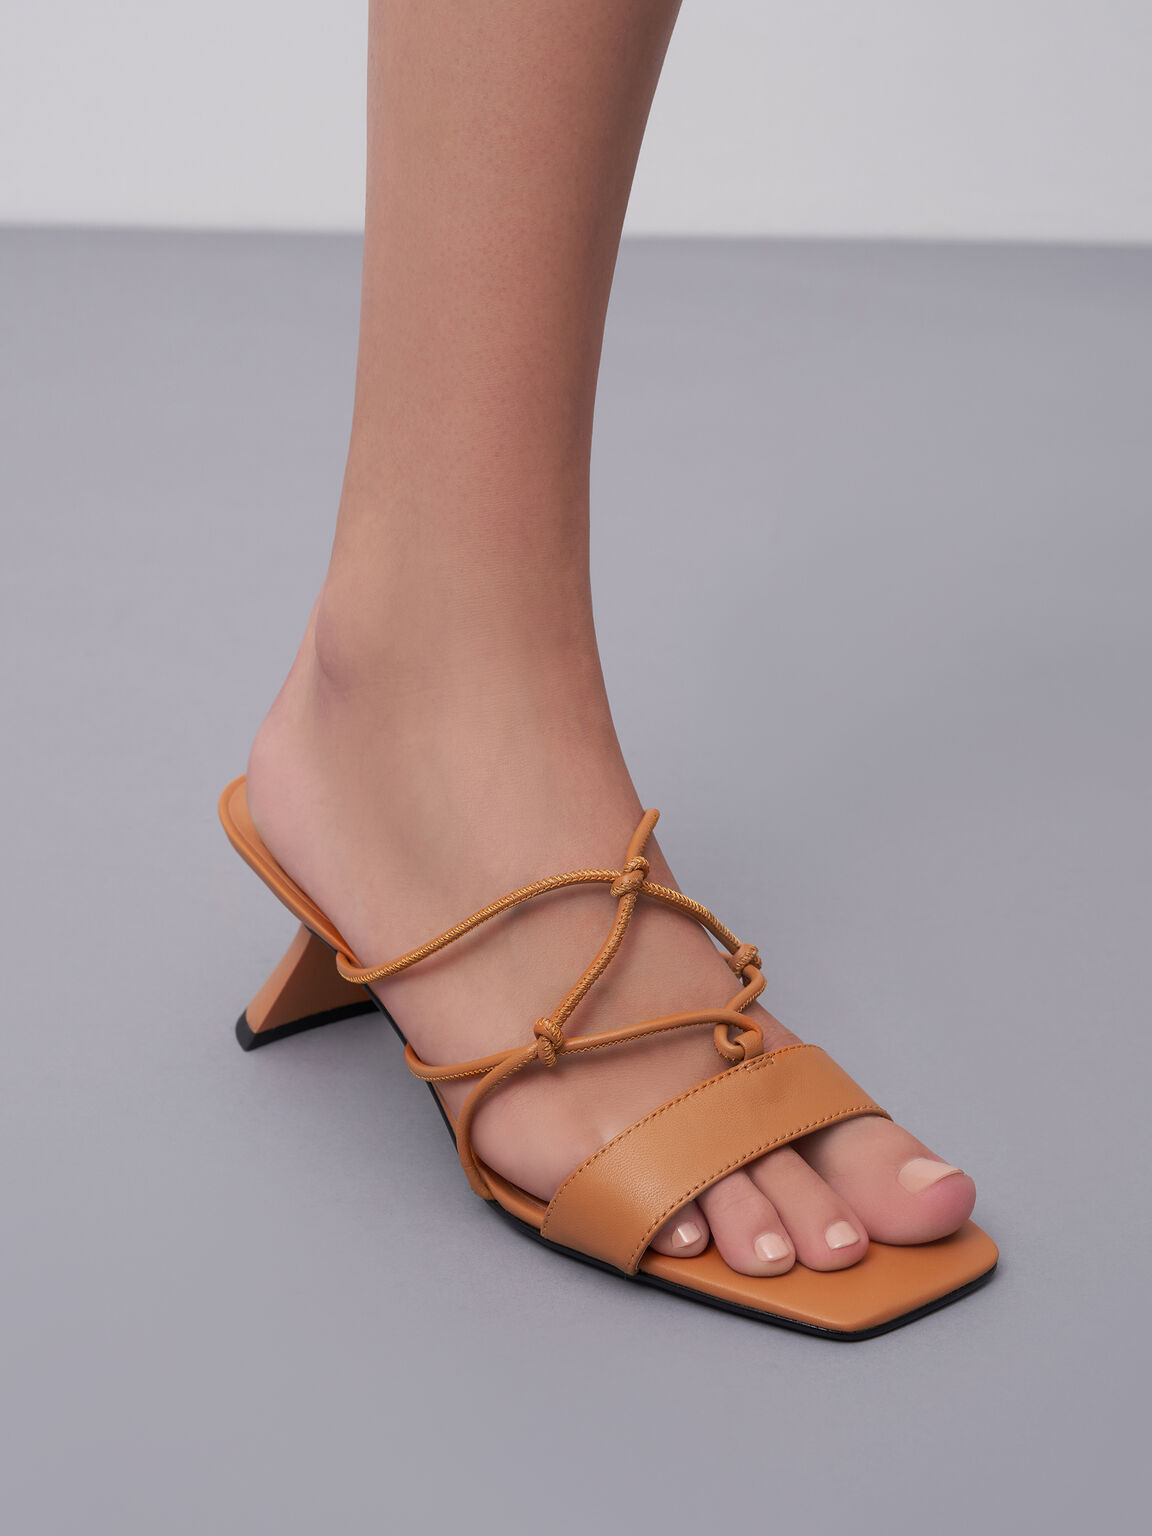 Strappy Leather Sculptural Heel Sandals, Orange, hi-res